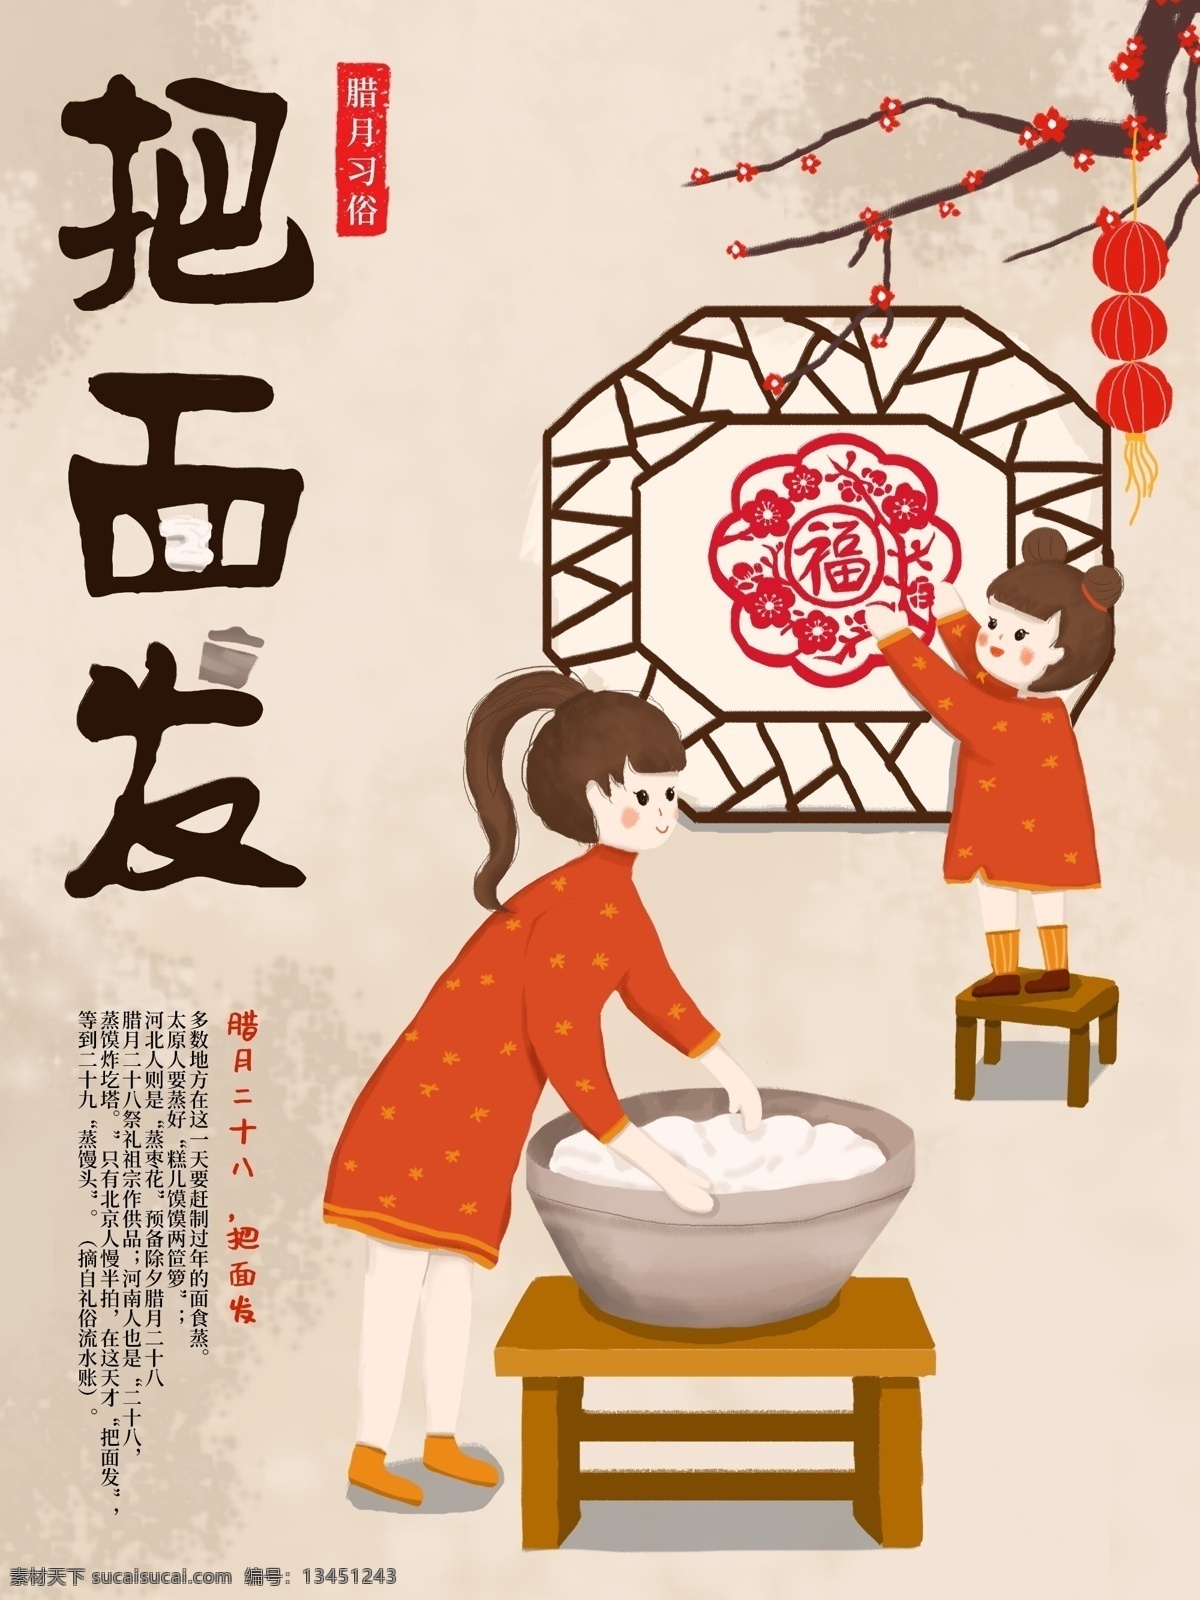 原创 手绘 插画 中国 腊月 习俗 海报 绘画 过年 卡通 可爱 中国传统 风俗习惯 新年 腊月二八 把面发 贴窗花